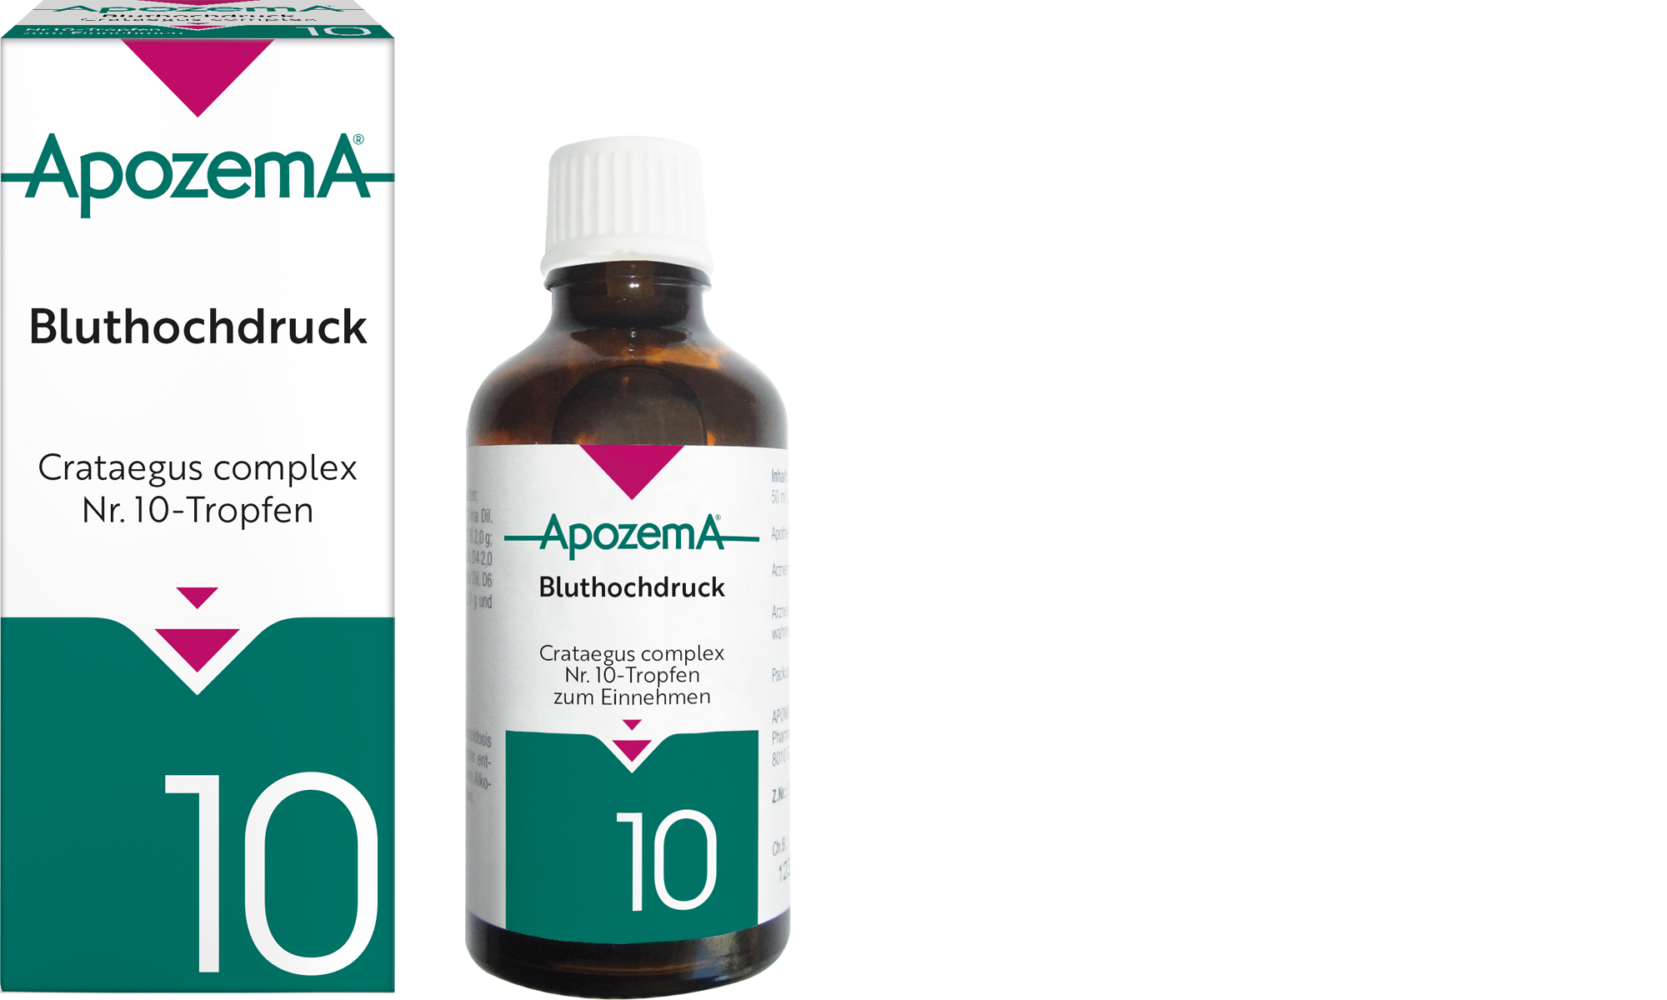 Apozema® Bluthochdruck; Crataegus complex Nr. 10-Tropfen